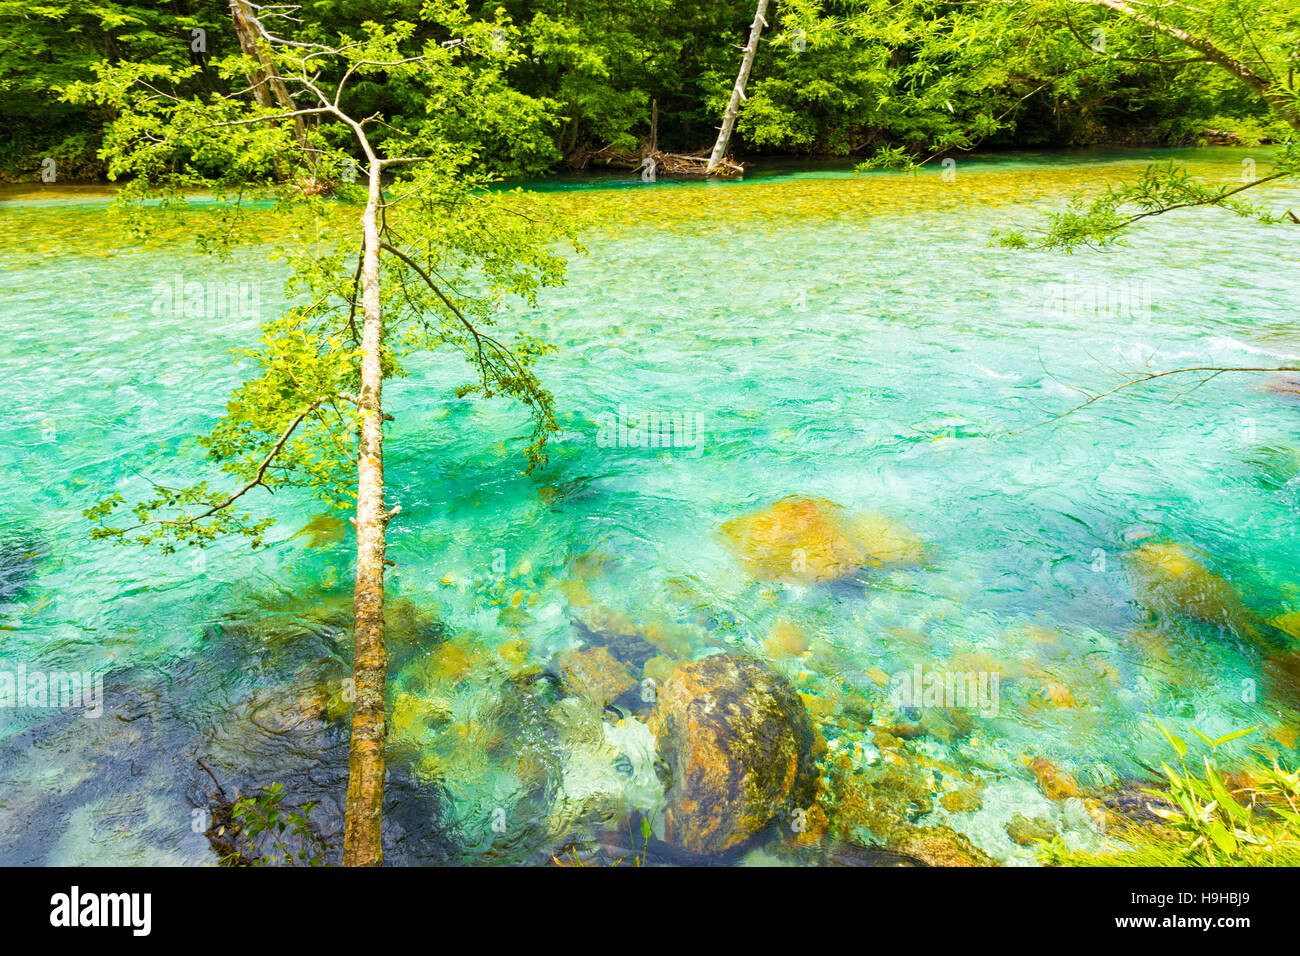 Immacolate acque turchesi del cristallino Azusa fiume scorre attraverso la foresta indisturbati nelle Alpi giapponesi città di Kamikochi Foto Stock